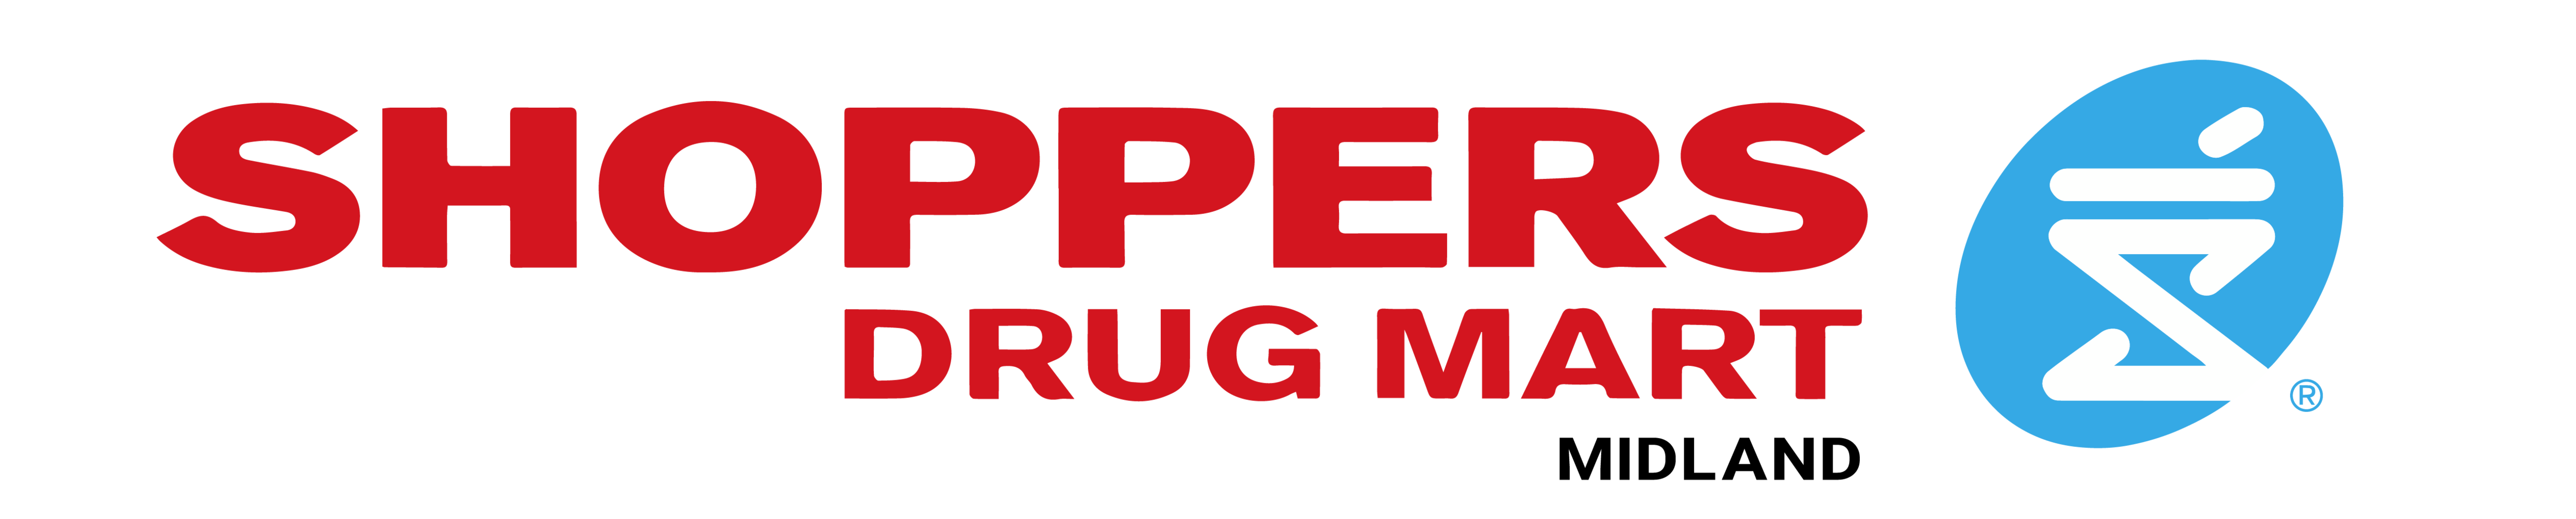 Shoppers Drug Mart Midland